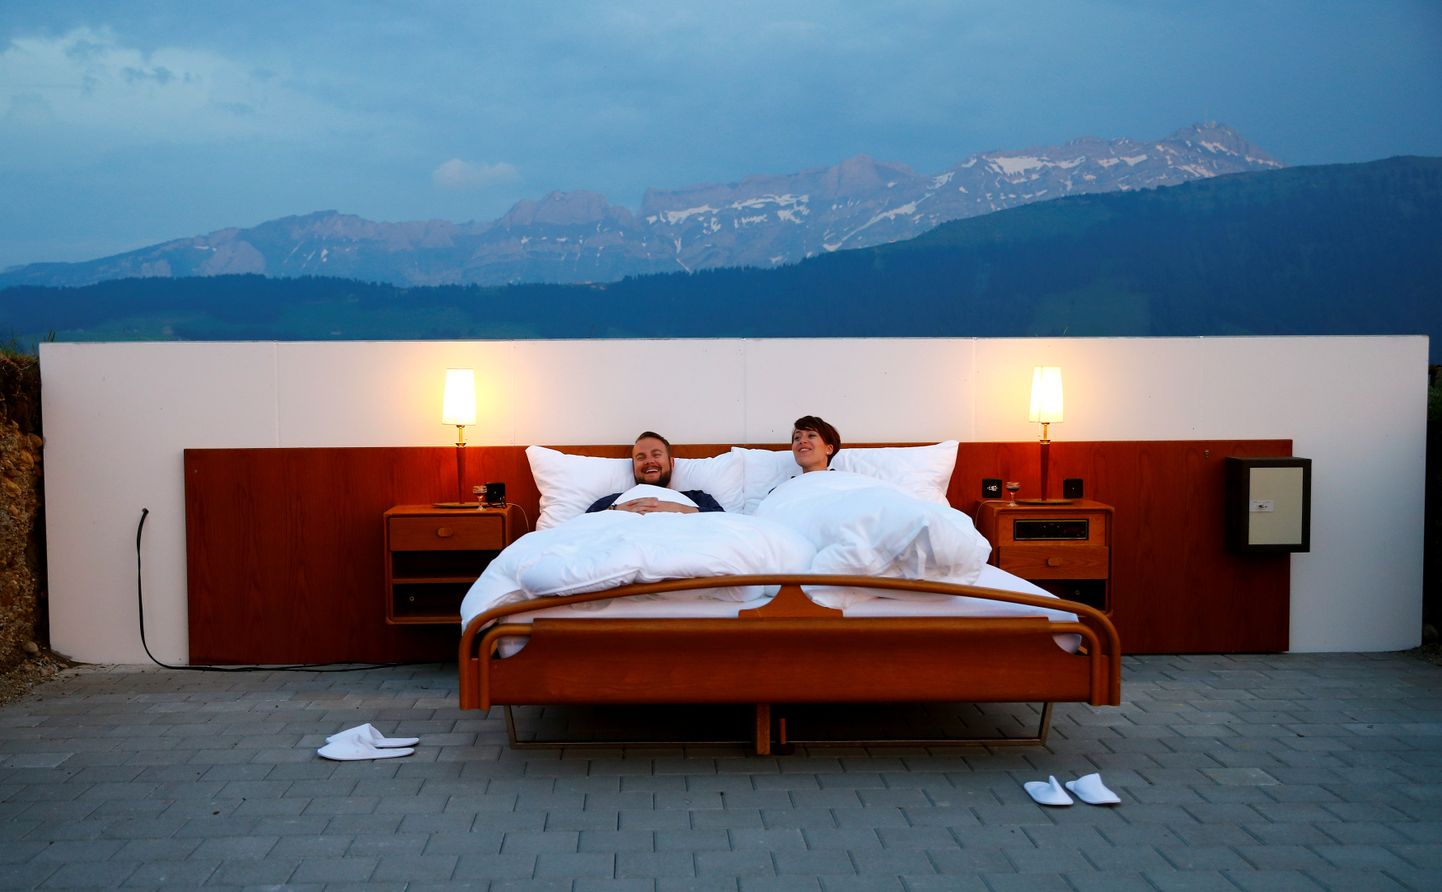 Отель под открытым небом Null-Stern-Hotel в Швейцарии. Иллюстративное фото.